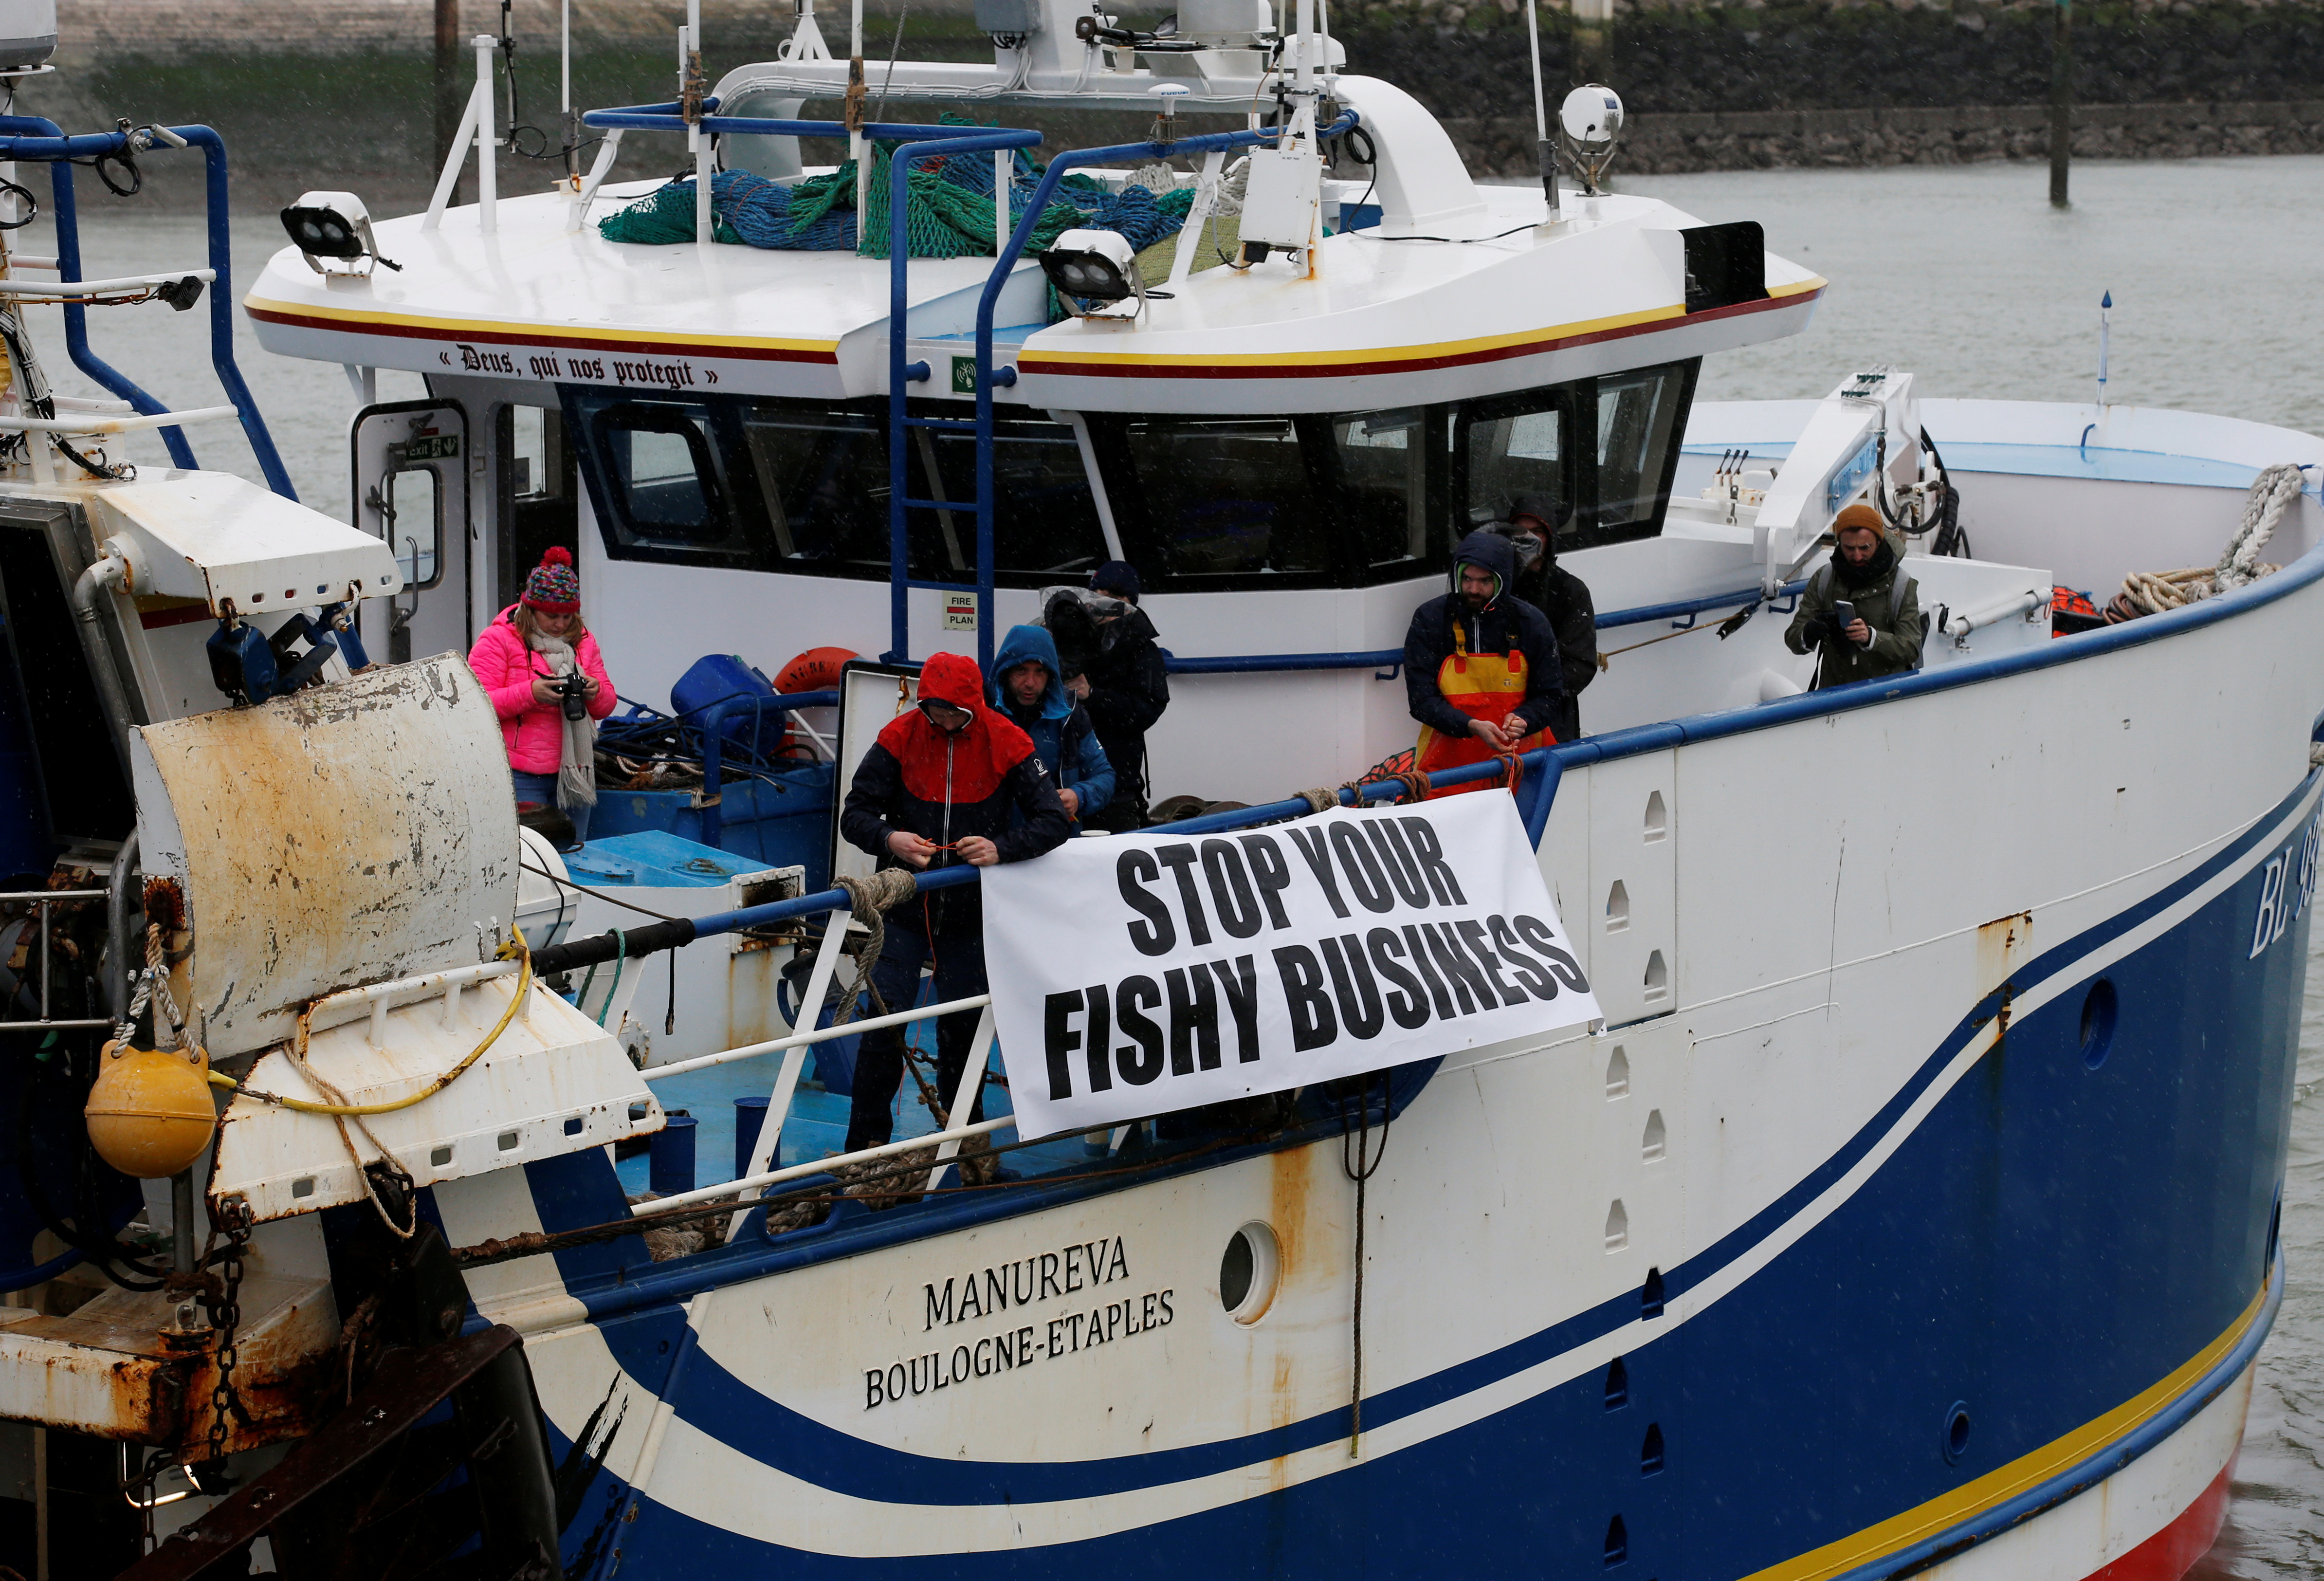 Según el acuerdo comercial del Brexit alcanzado a finales de 2020, los pescadores europeos pueden operar en aguas británicas siempre que puedan demostrar que anteriormente ejercían allí su actividad (Foto: REUTERS/Pascal Rossignol)